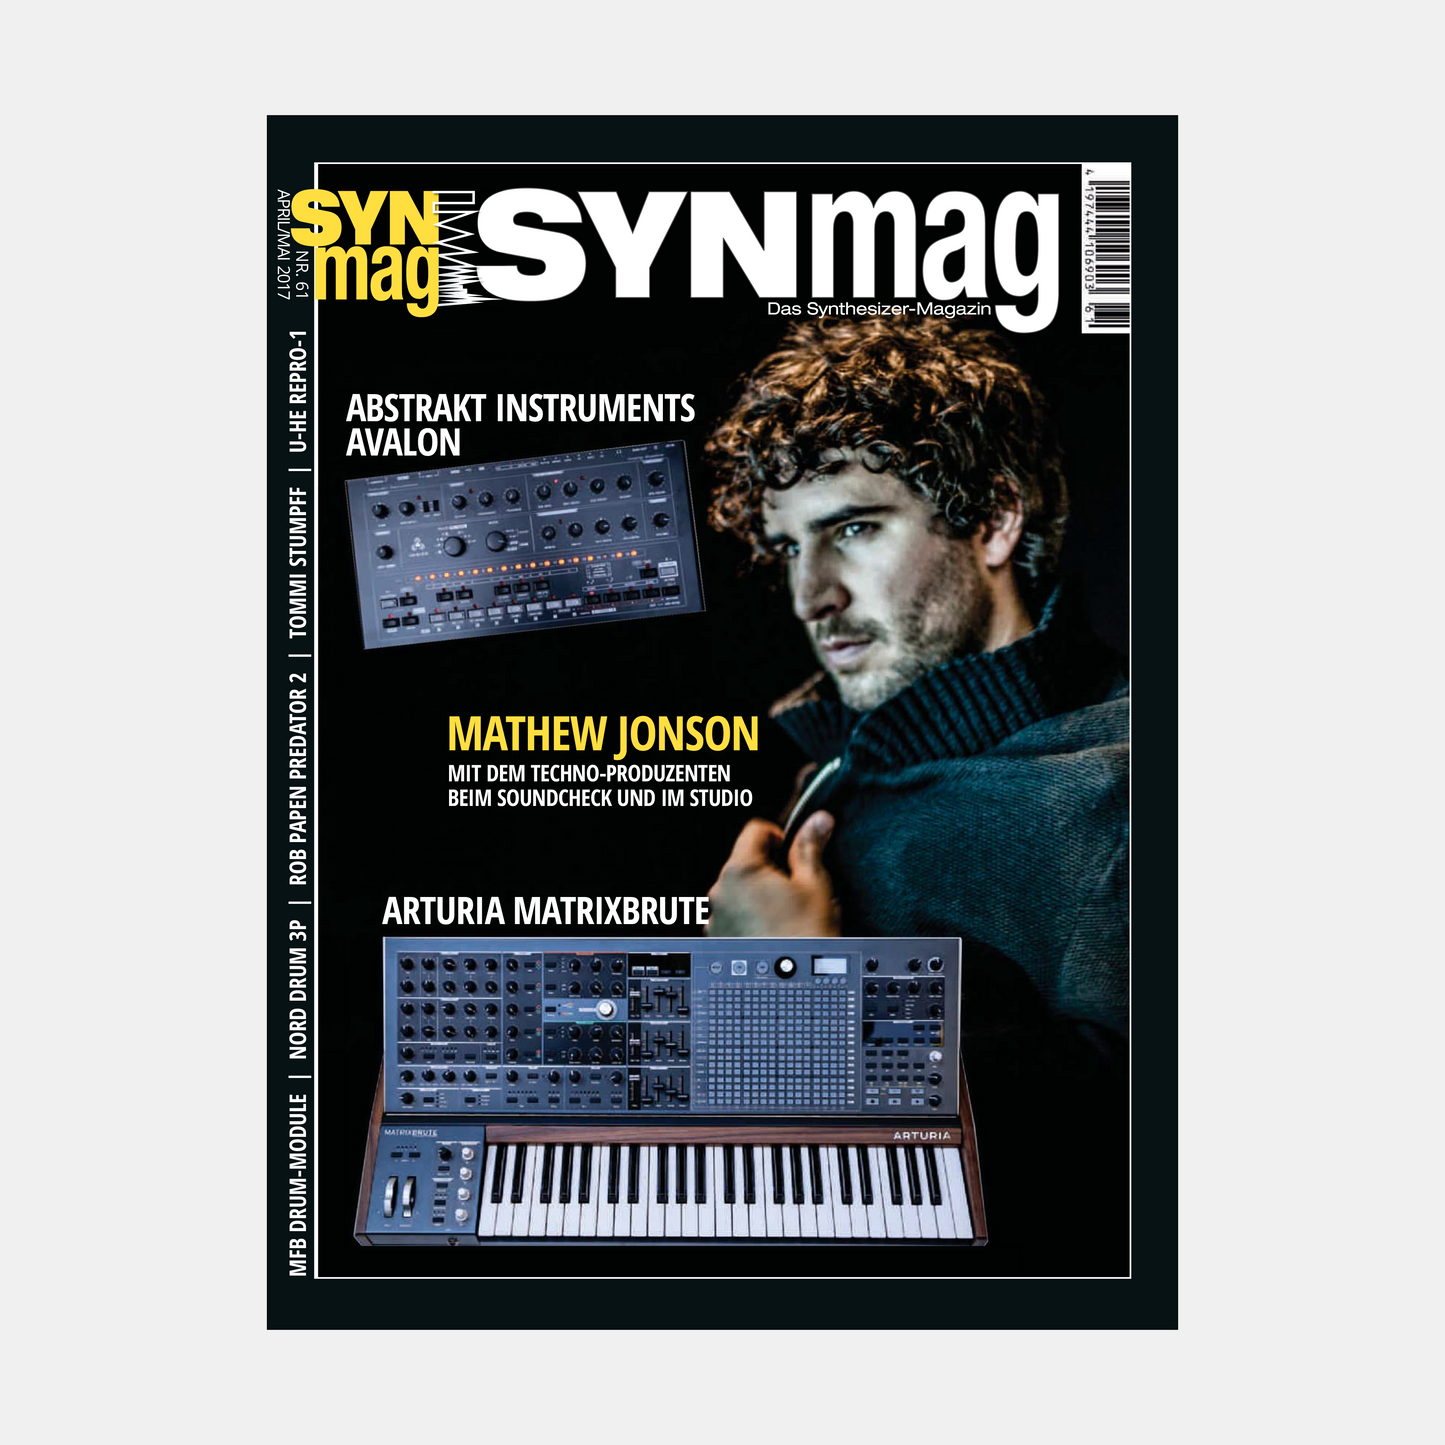 Synmag | Ausgaben 61 bis 65 im Paket | ePaper